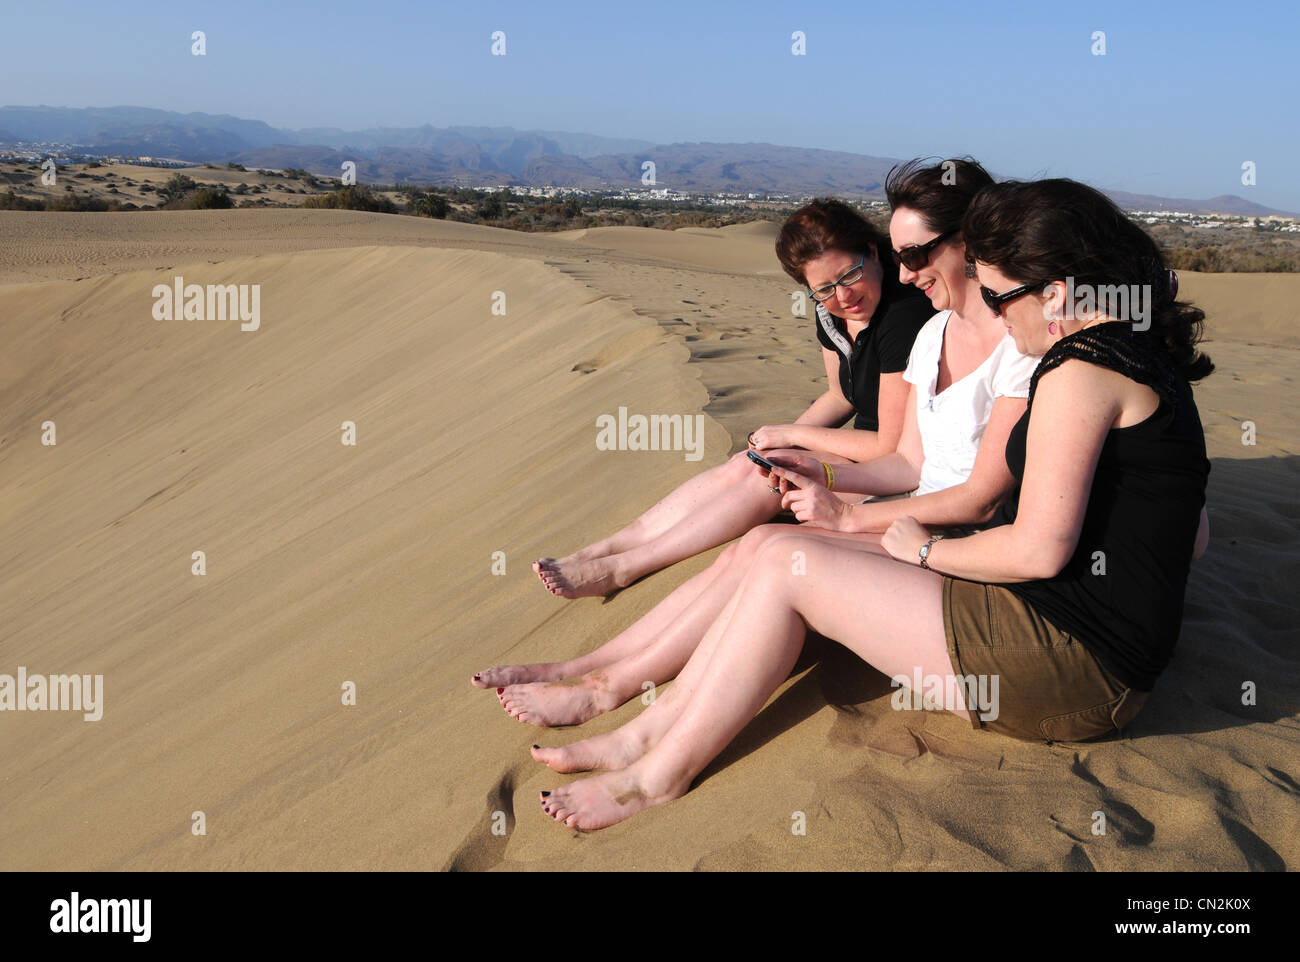 Las dunas de arena, dunas de Maspalomas, Gran Canaria, Islas Canarias Foto de stock